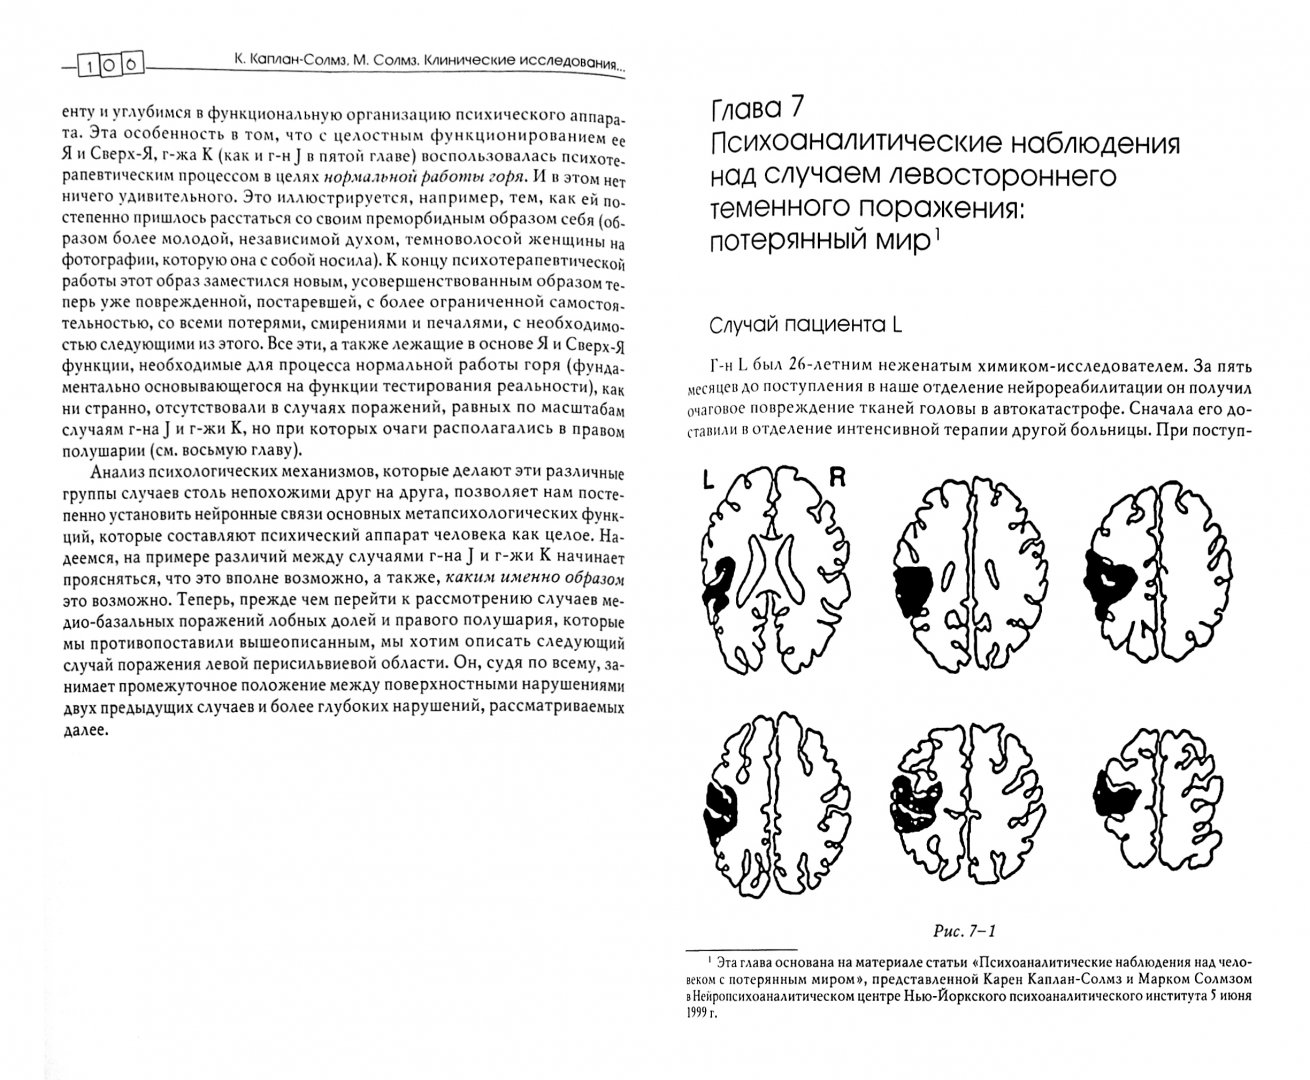 Иллюстрация 1 из 16 для Клинические исследования нейропсихоанализе. Введение в глубинную нейропсихологию - Каплан-Солмз, Солмз | Лабиринт - книги. Источник: Лабиринт